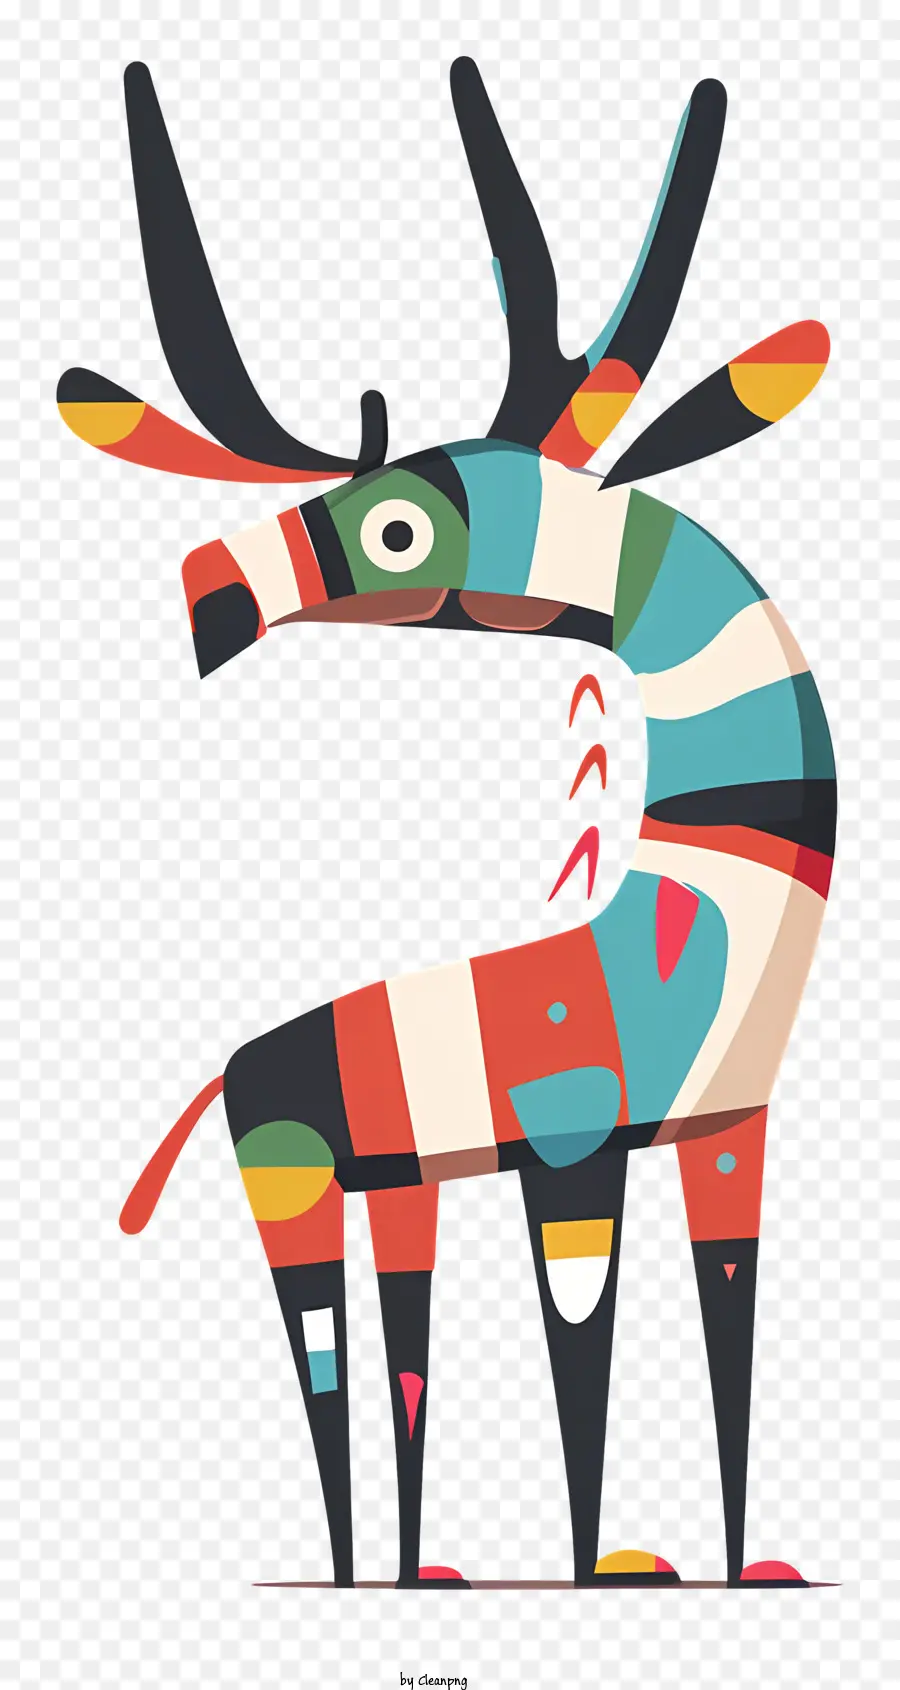 strane renne cervi colorati di grandi corna grandi motivi astratti - Cervi colorati con motivi astratti sul corpo